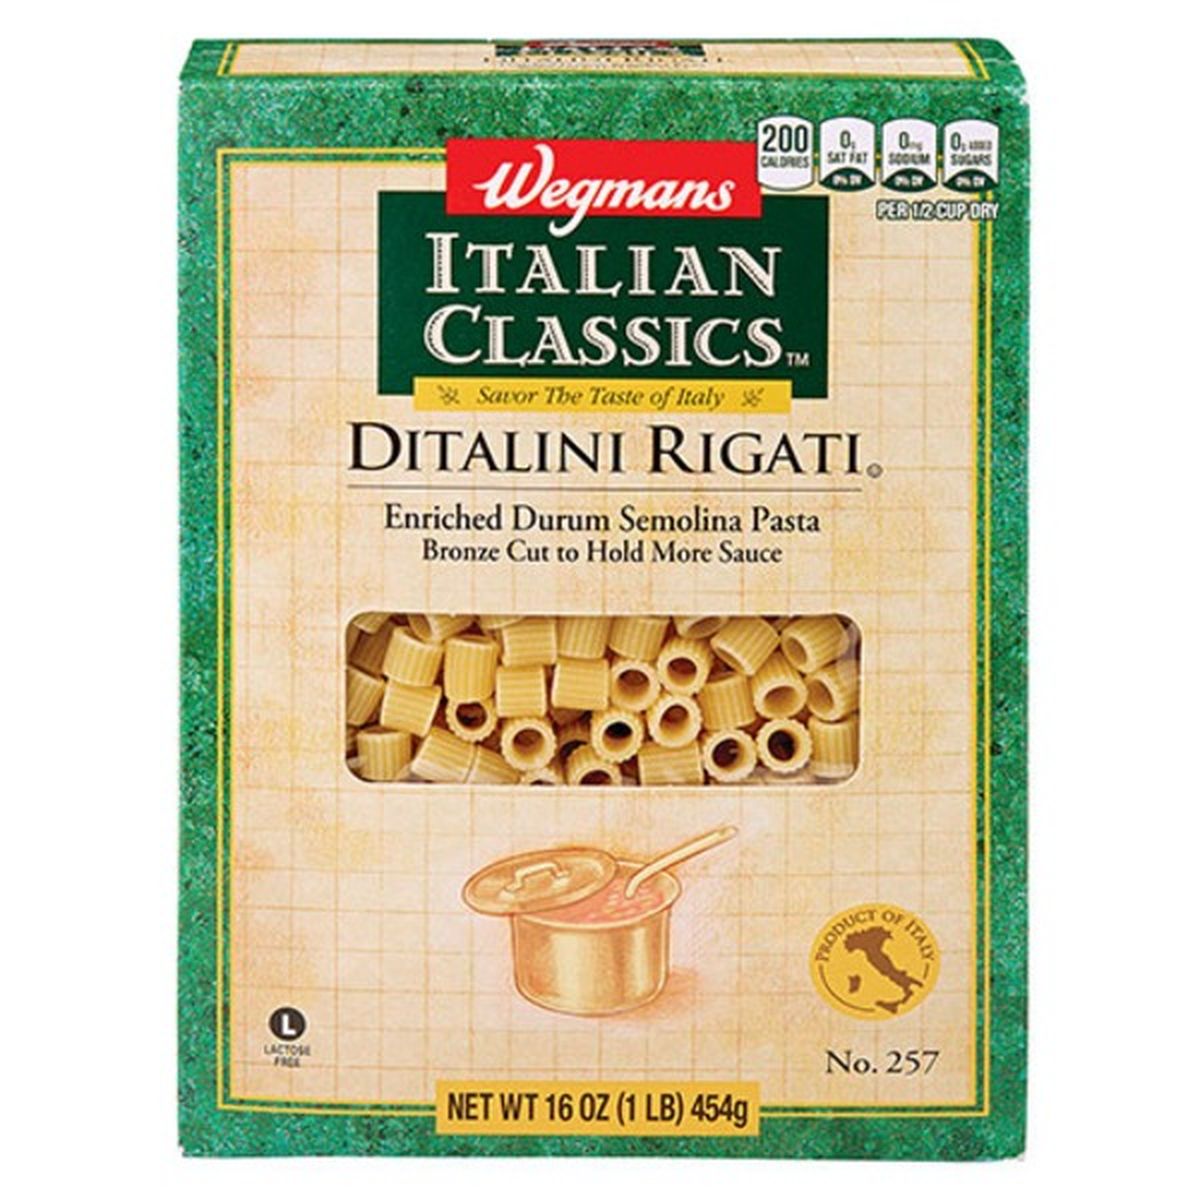 Calories in Wegmans Italian Classics Ditalini Rigati